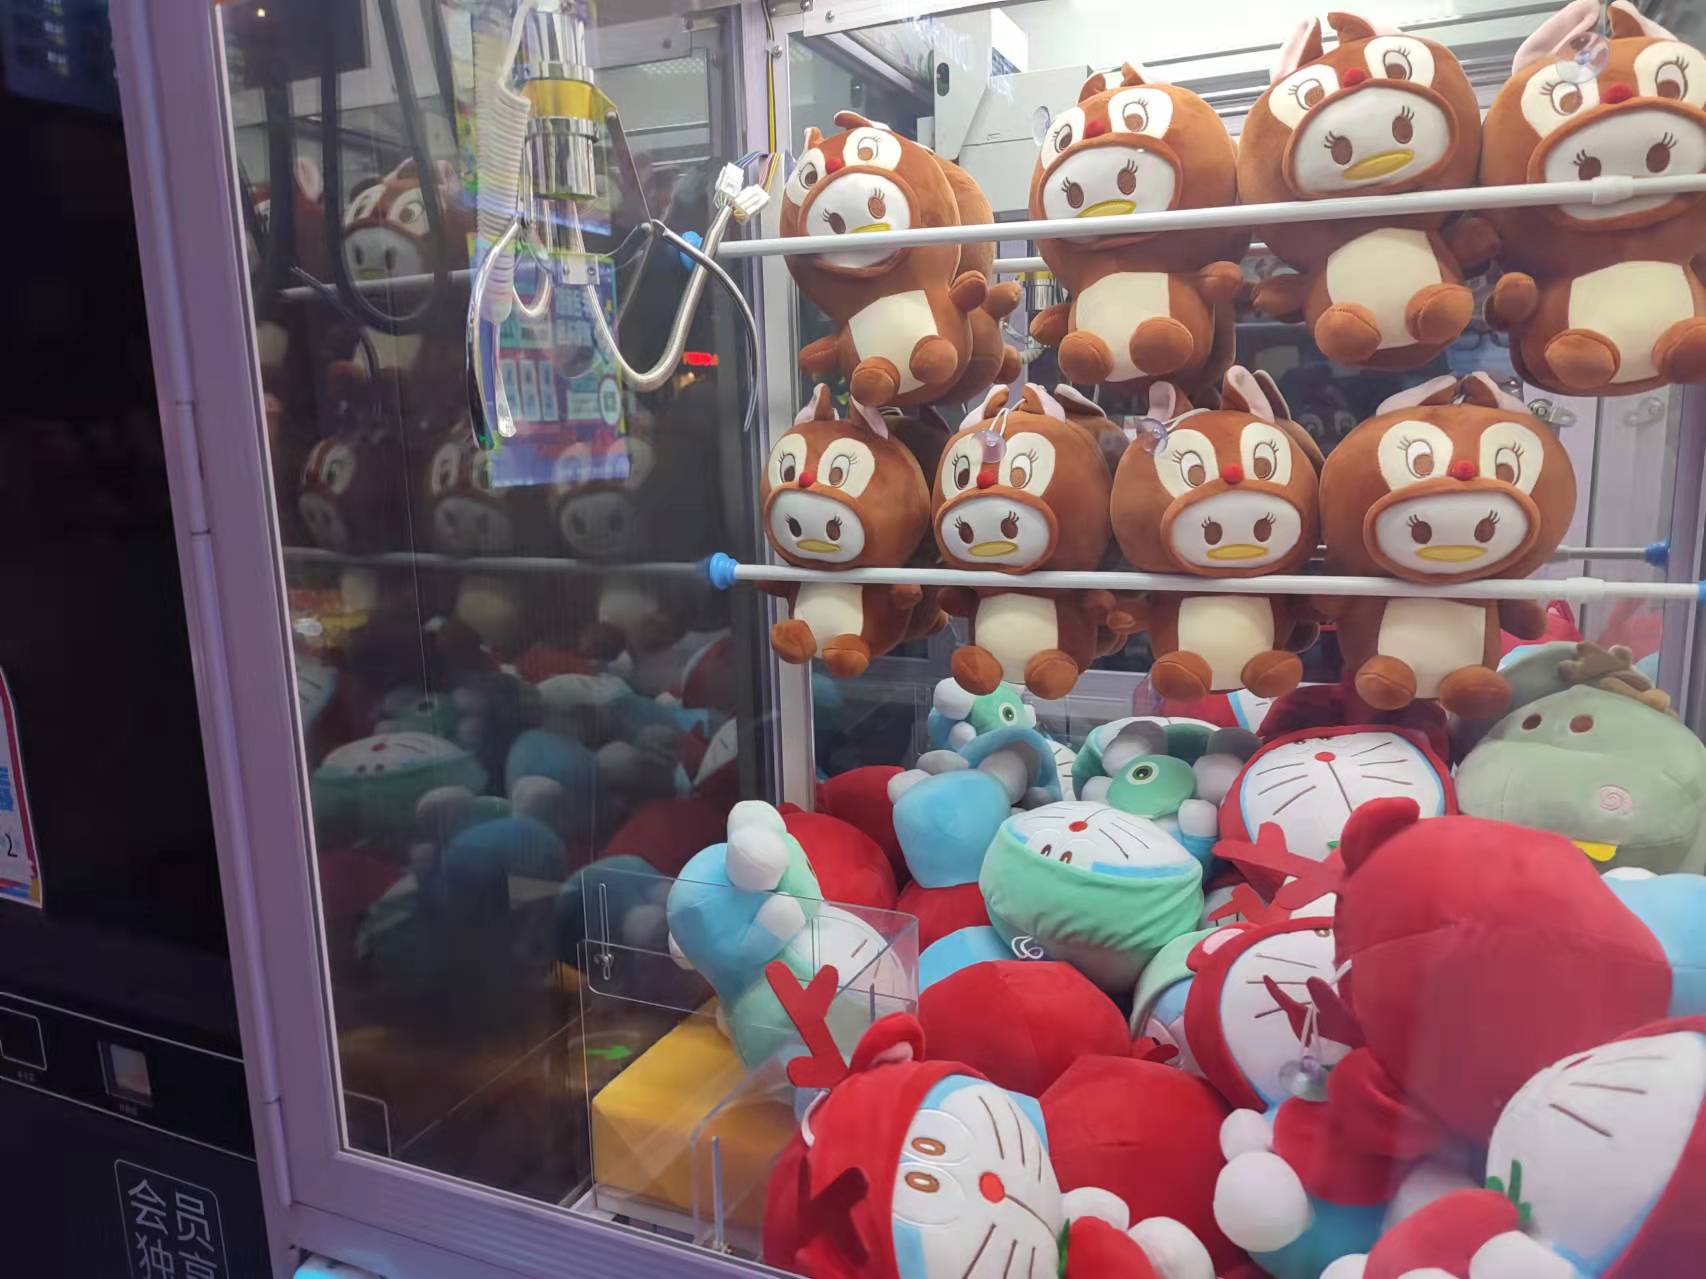 上海迪士尼游客为抢玩偶“憋到尿血” 爱好也需有理智做“缰绳”